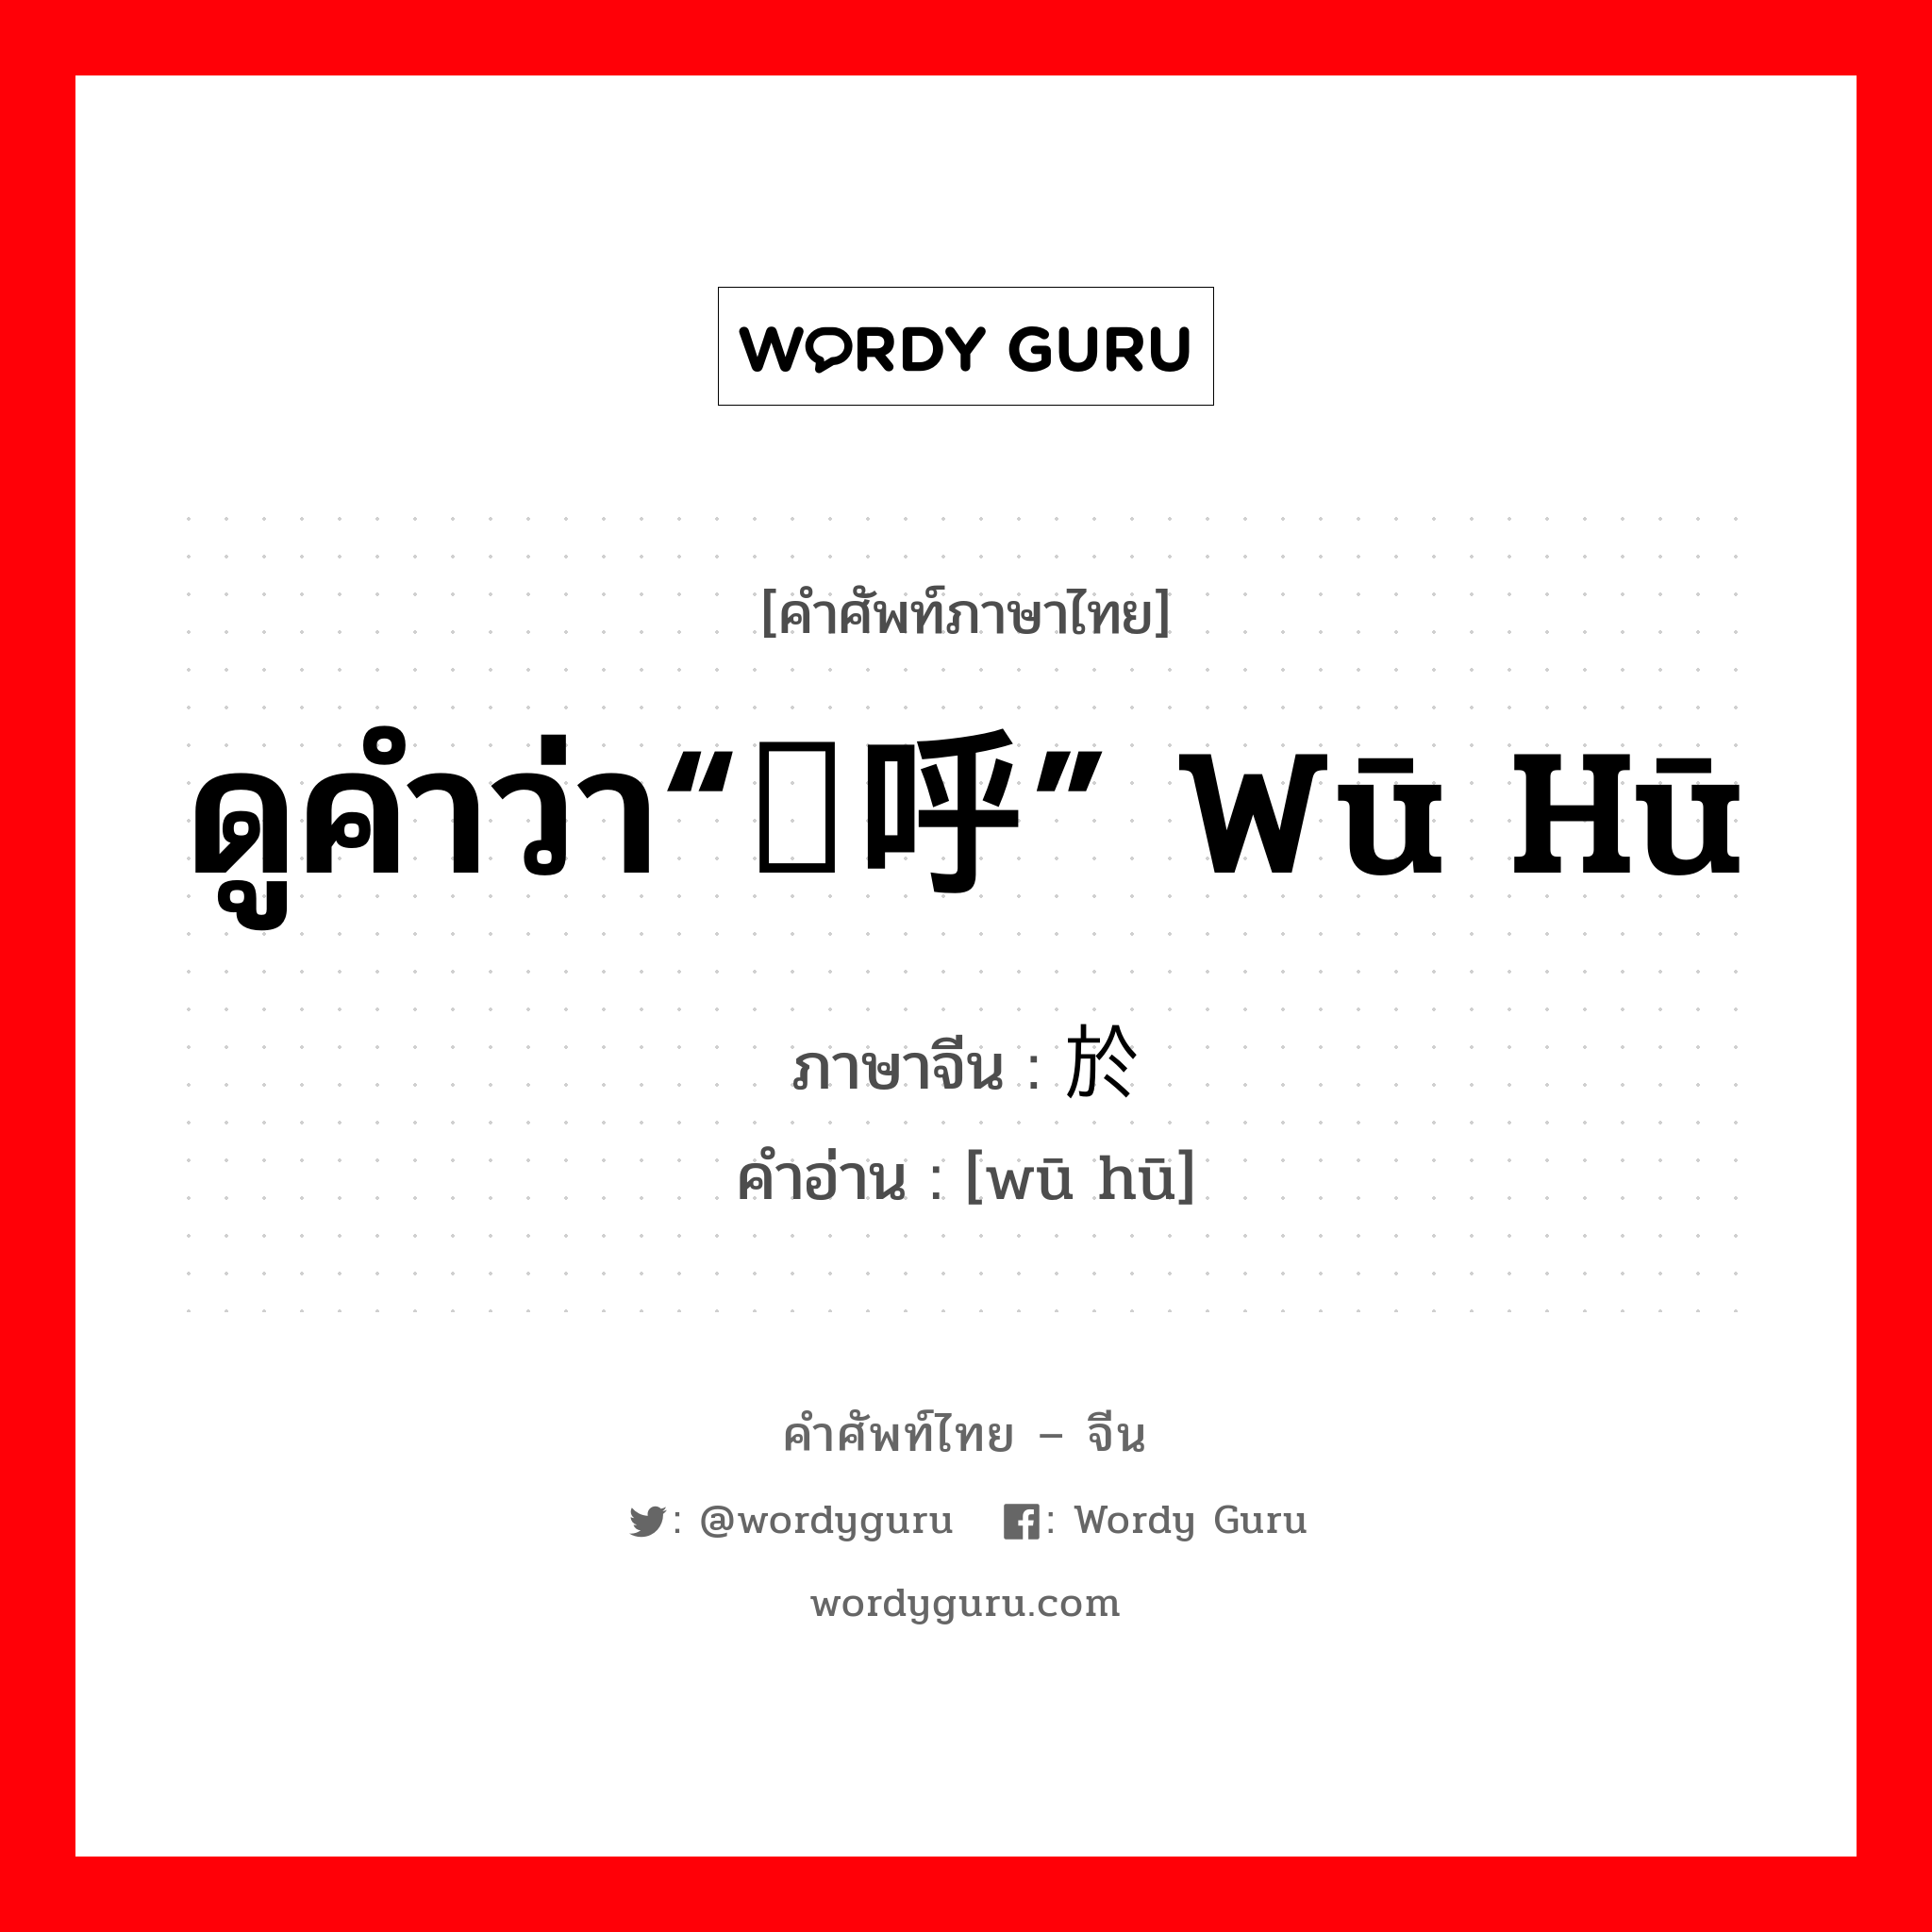 ดูคำว่า“呜呼” wū hū ภาษาจีนคืออะไร, คำศัพท์ภาษาไทย - จีน ดูคำว่า“呜呼” wū hū ภาษาจีน 於戏 คำอ่าน [wū hū]